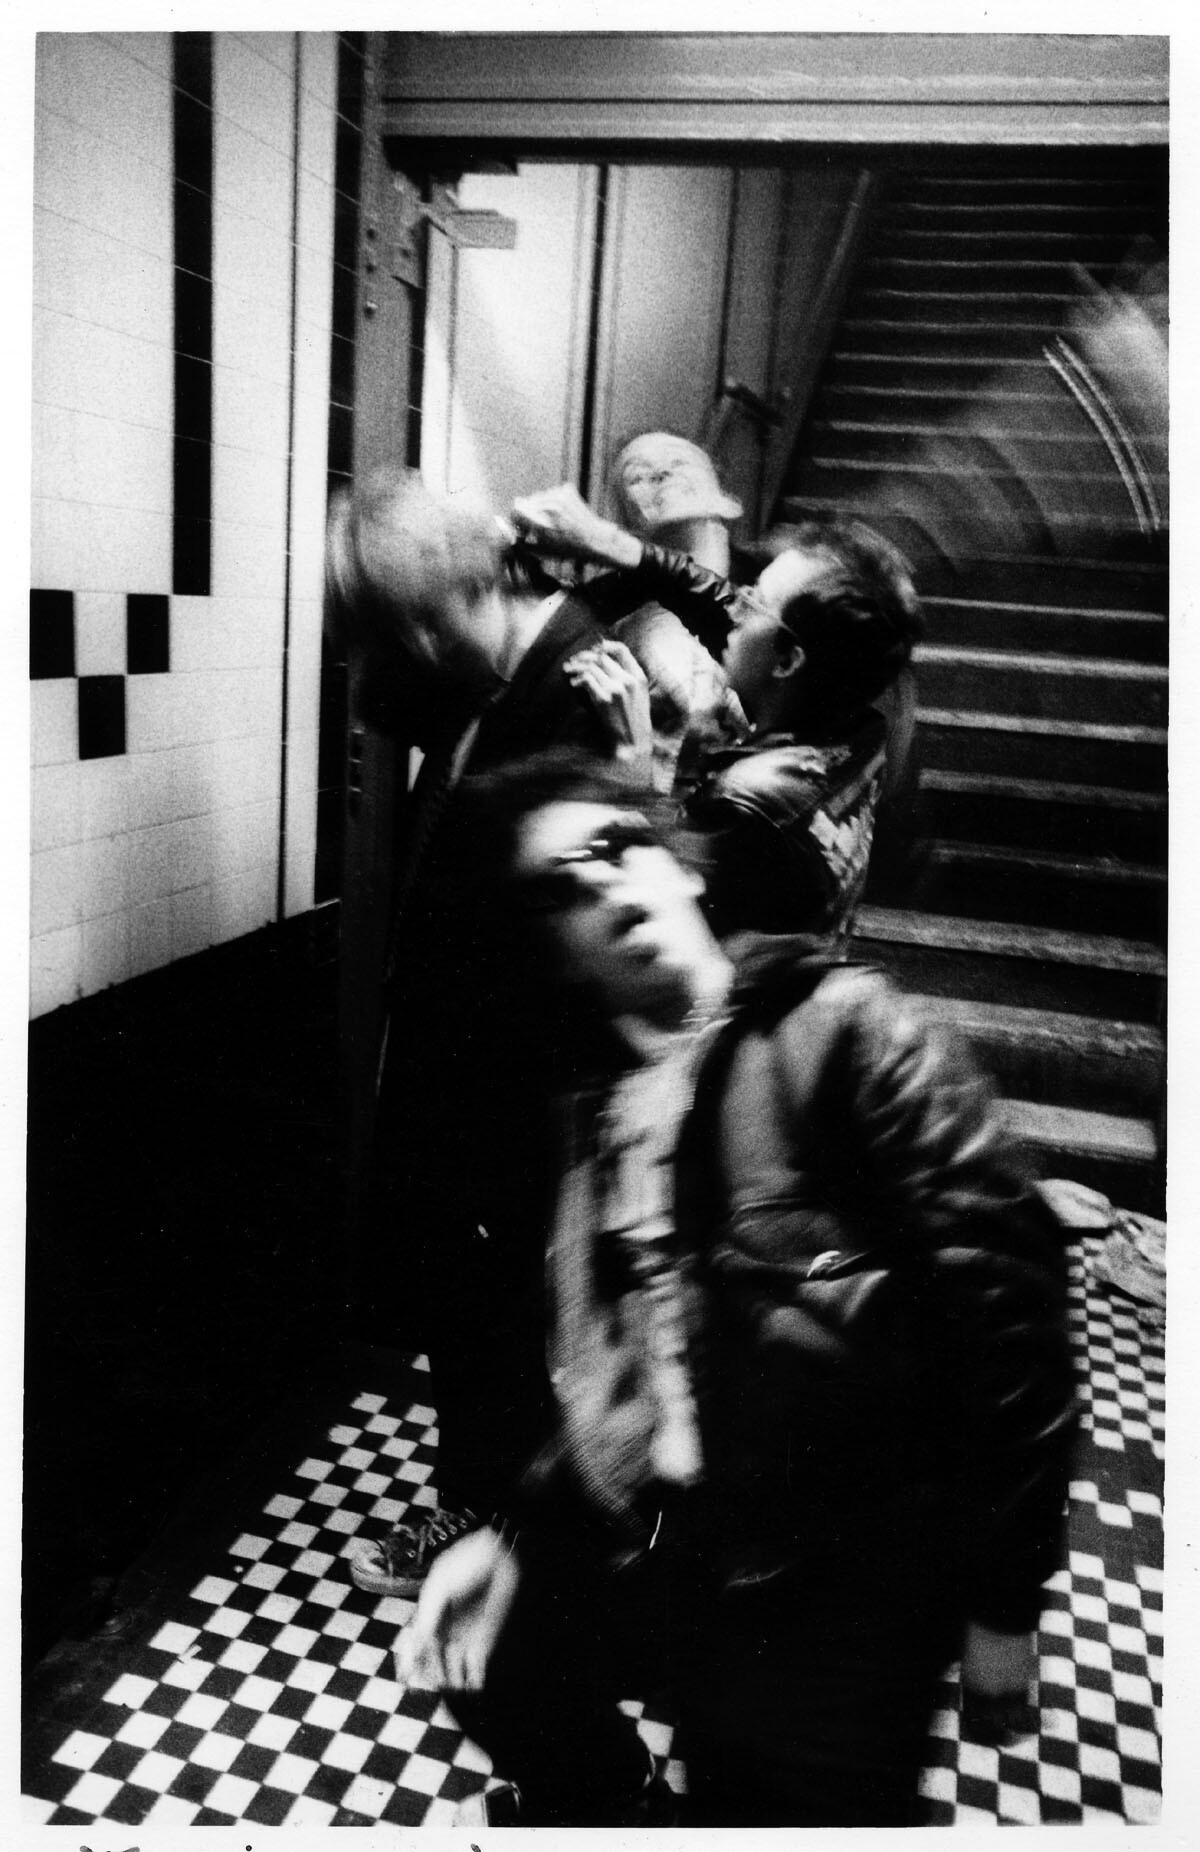 Стрижка в стиле панк, CBGB. Фотограф Дэвид Годлис